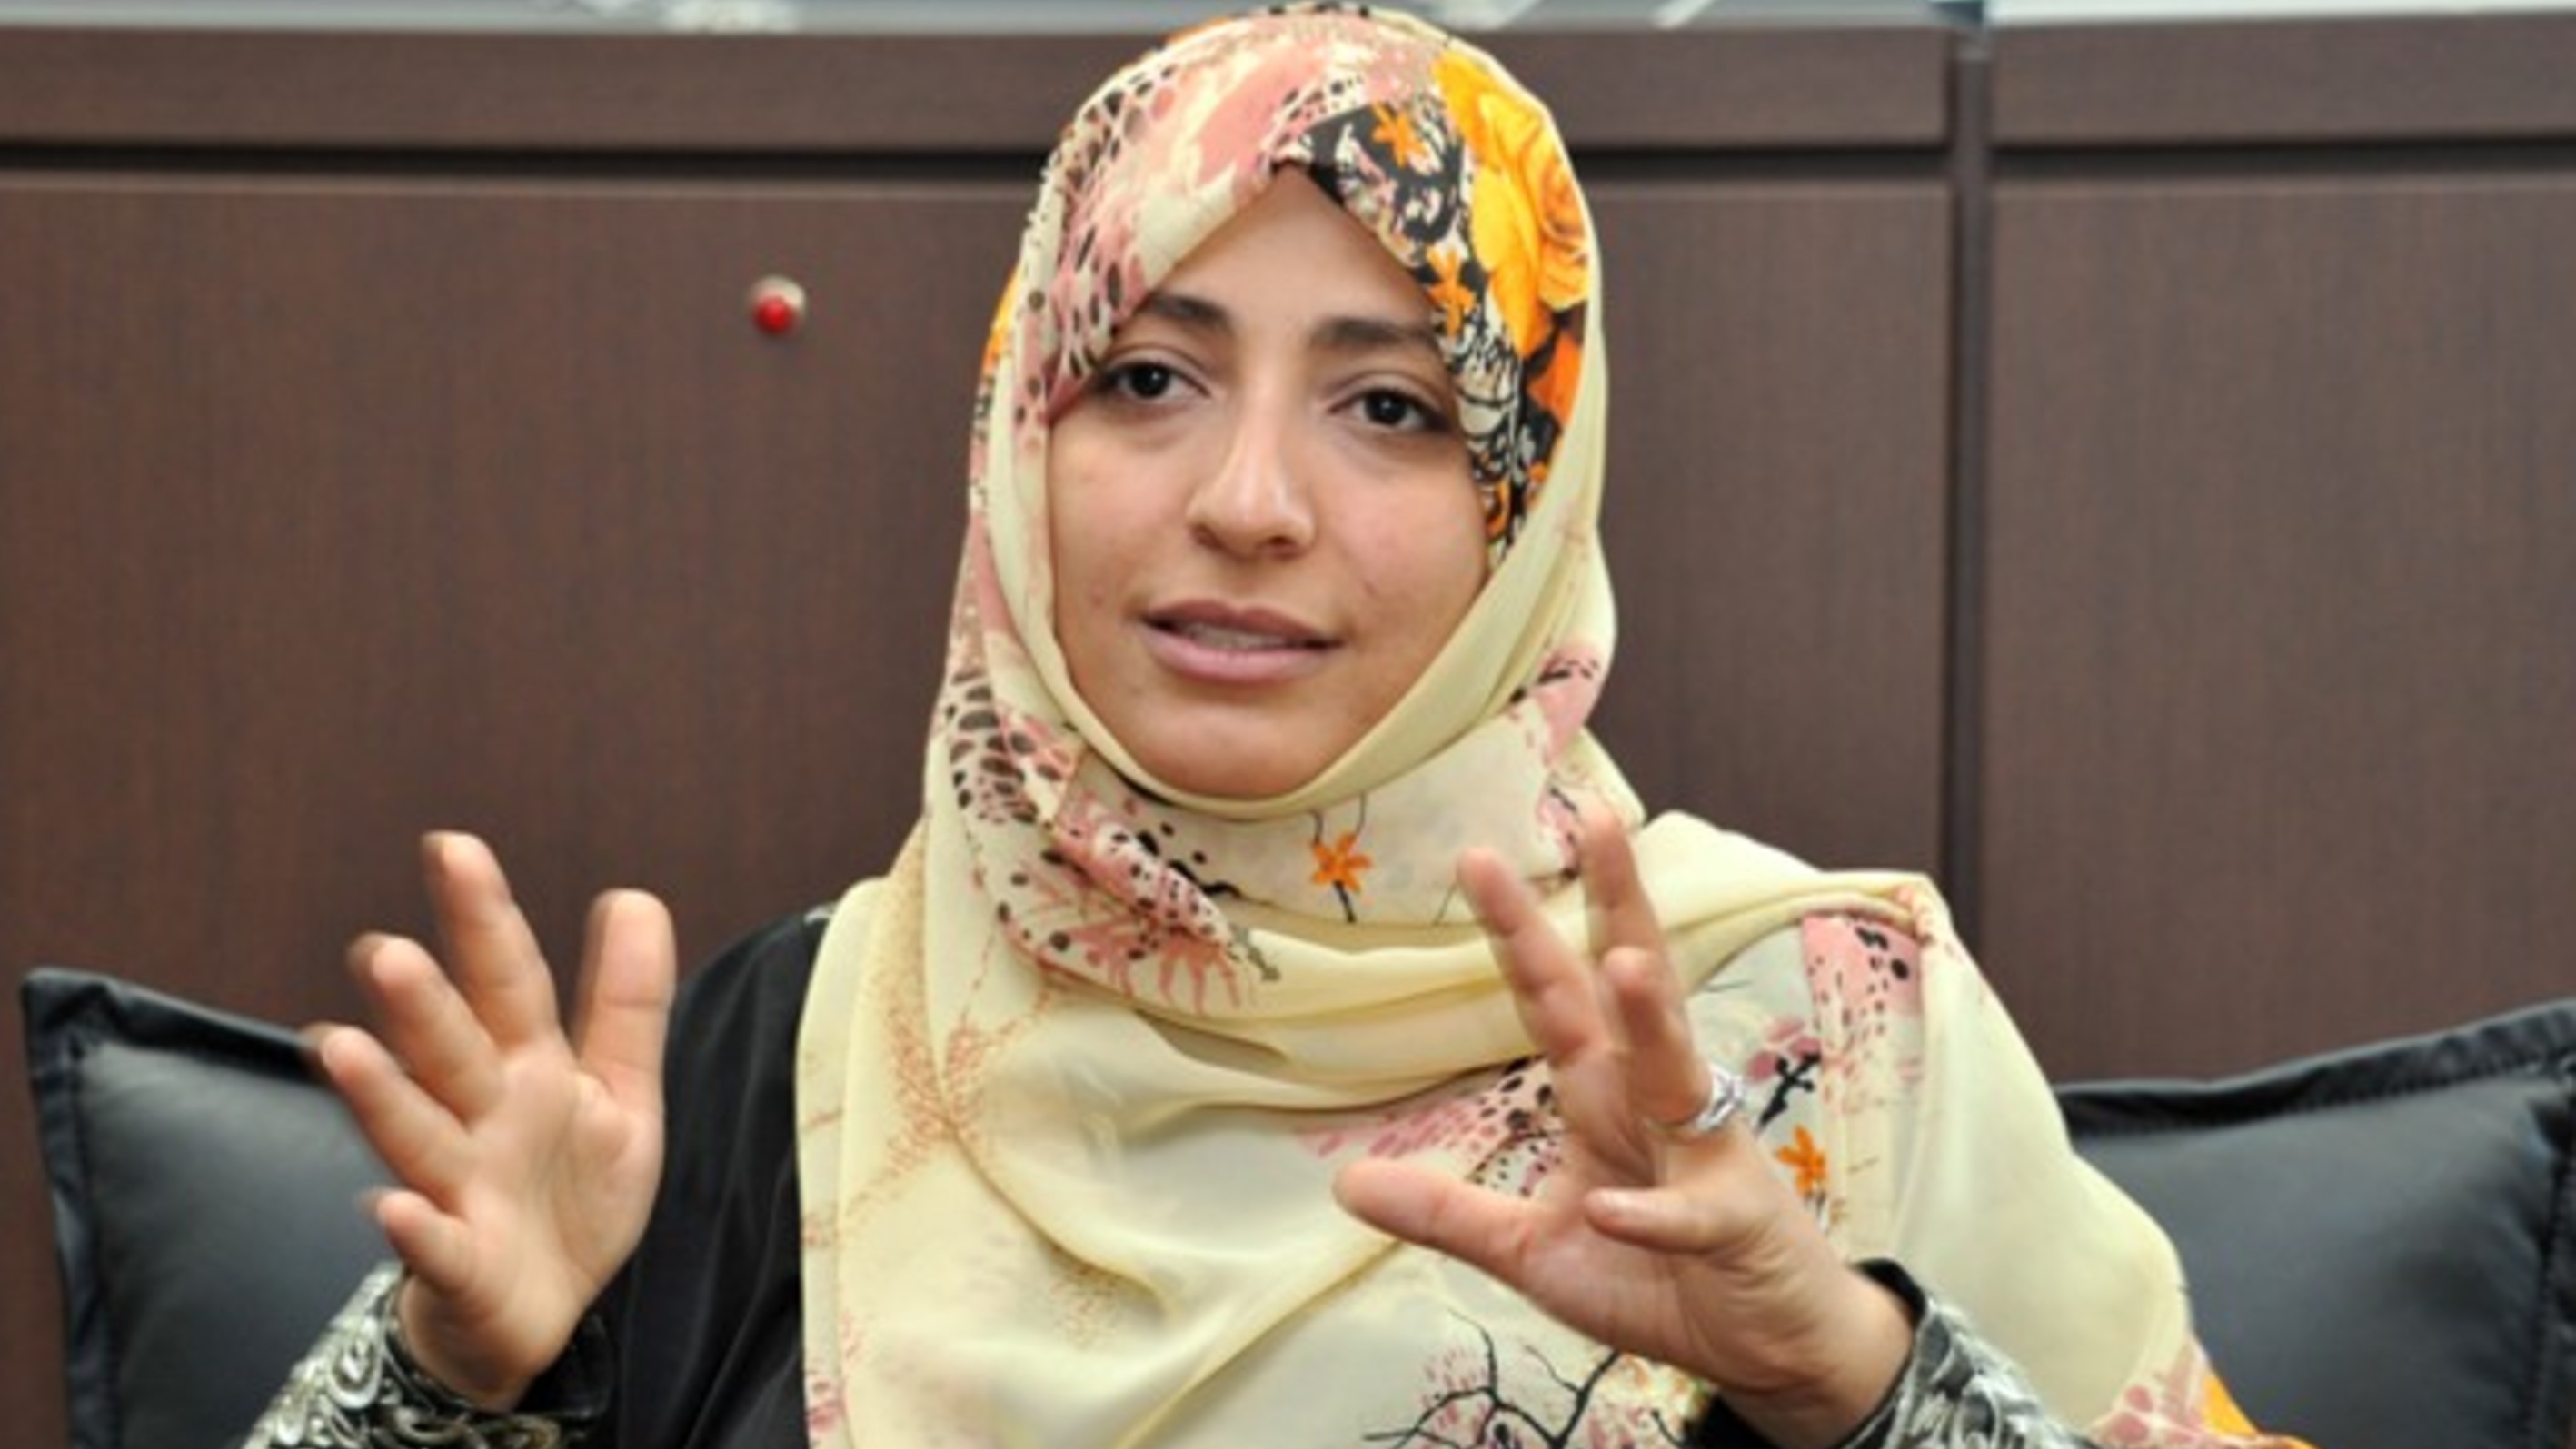 حوار الناشطة الحائزة على جائزة نوبل للسلام توكل كرمان مع صحيفة الوطن القطرية